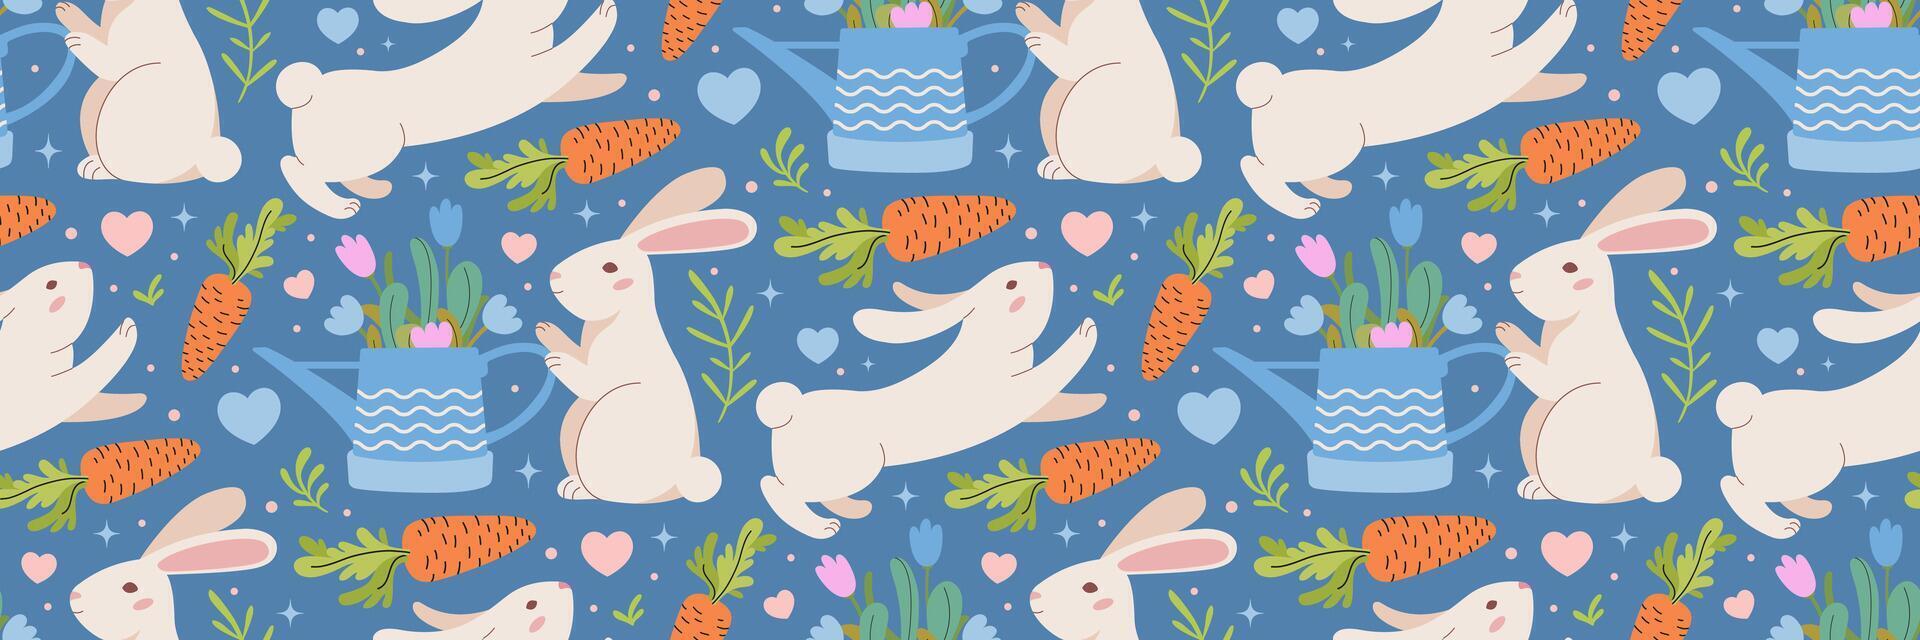 Pasen konijn, wortel en tuin gieter kan patroon. blauw achtergrond met konijntjes, vegetatie. traditioneel feestelijk achtergrond. voor groet kaart, banier, textiel, behang. vector illustratie